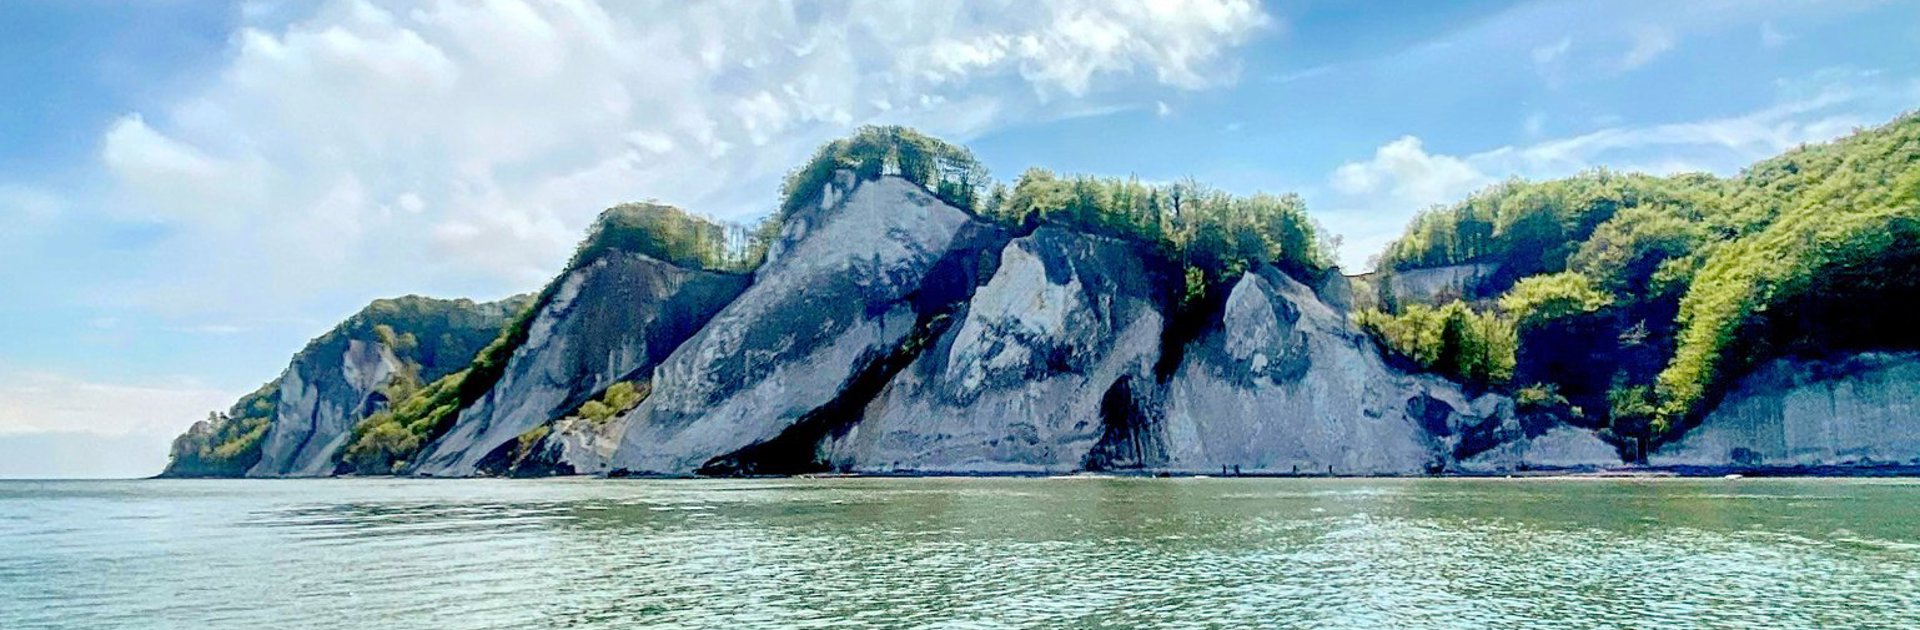 Moen Cliffs From Water ©Sascha Bendix Large